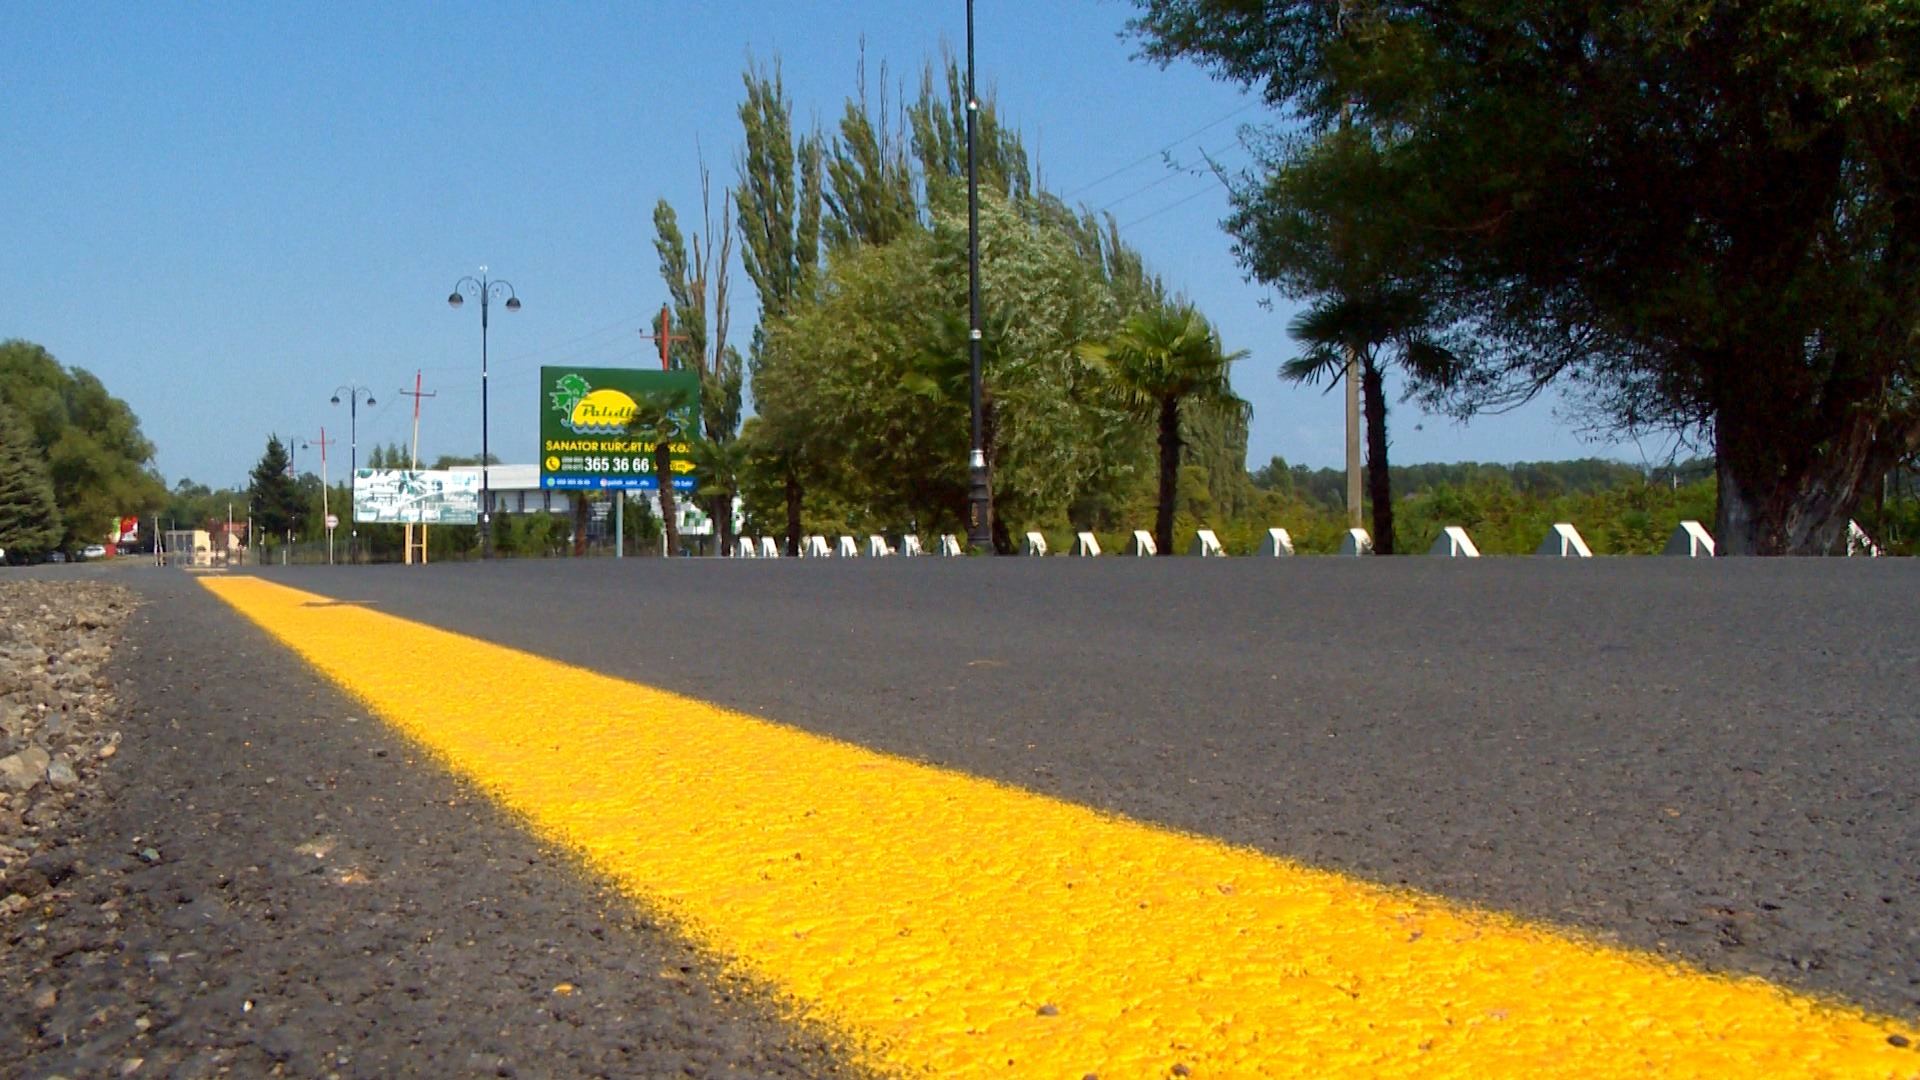 Lənkəranda ümumi istifadədə olan 38 km yol yenidən qurulub (FOTO)